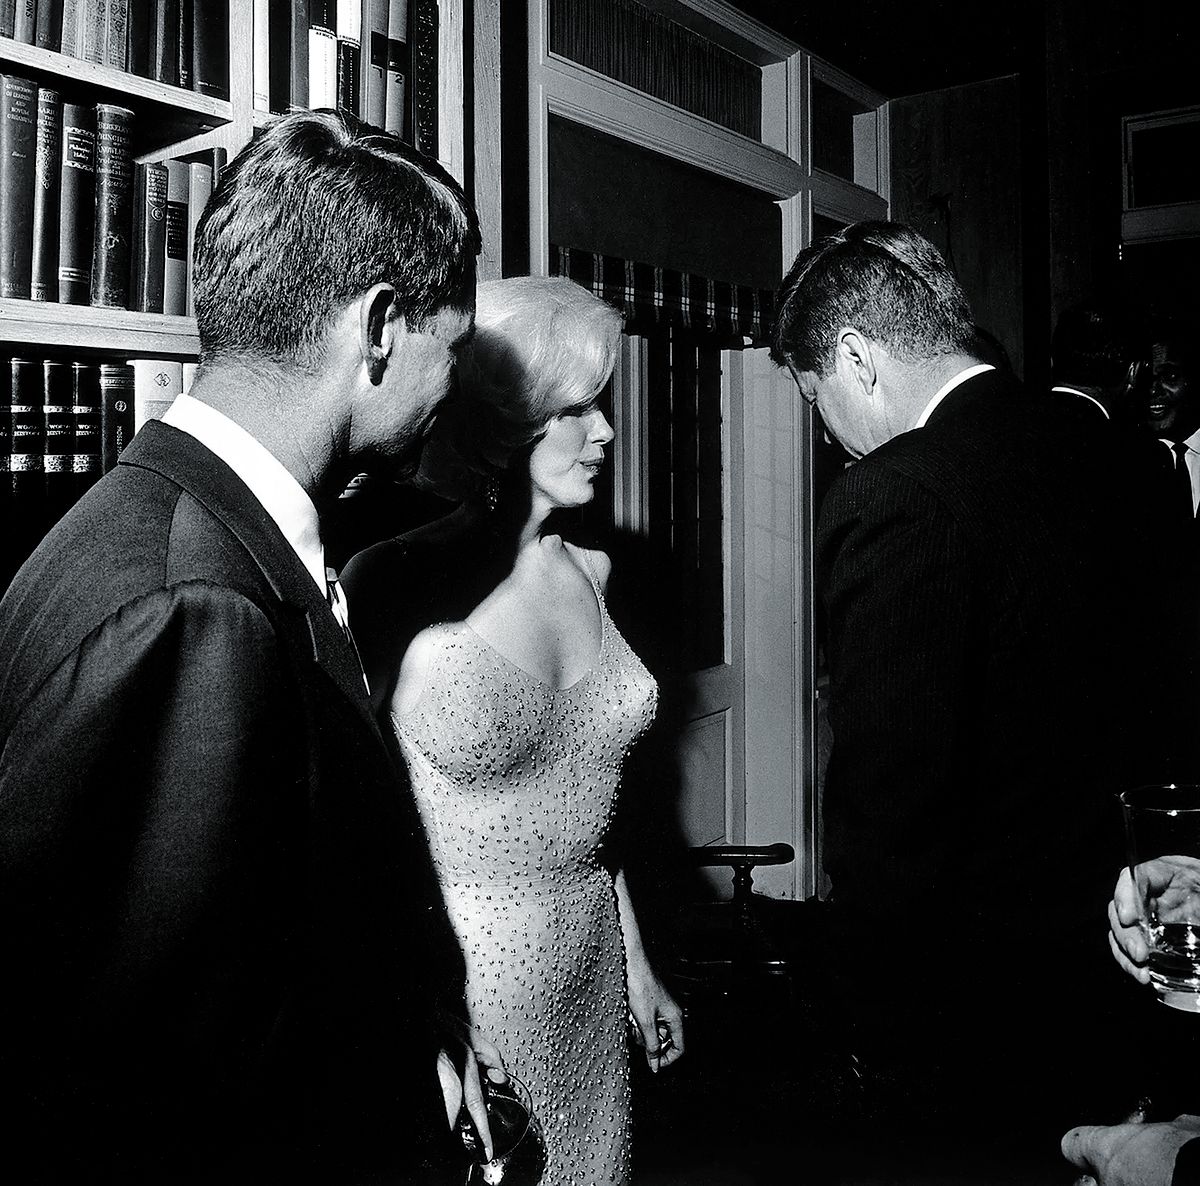 Мэрилин Монро в знаменитом платье беседует с Робертом и Джоном Ф. Кеннеди